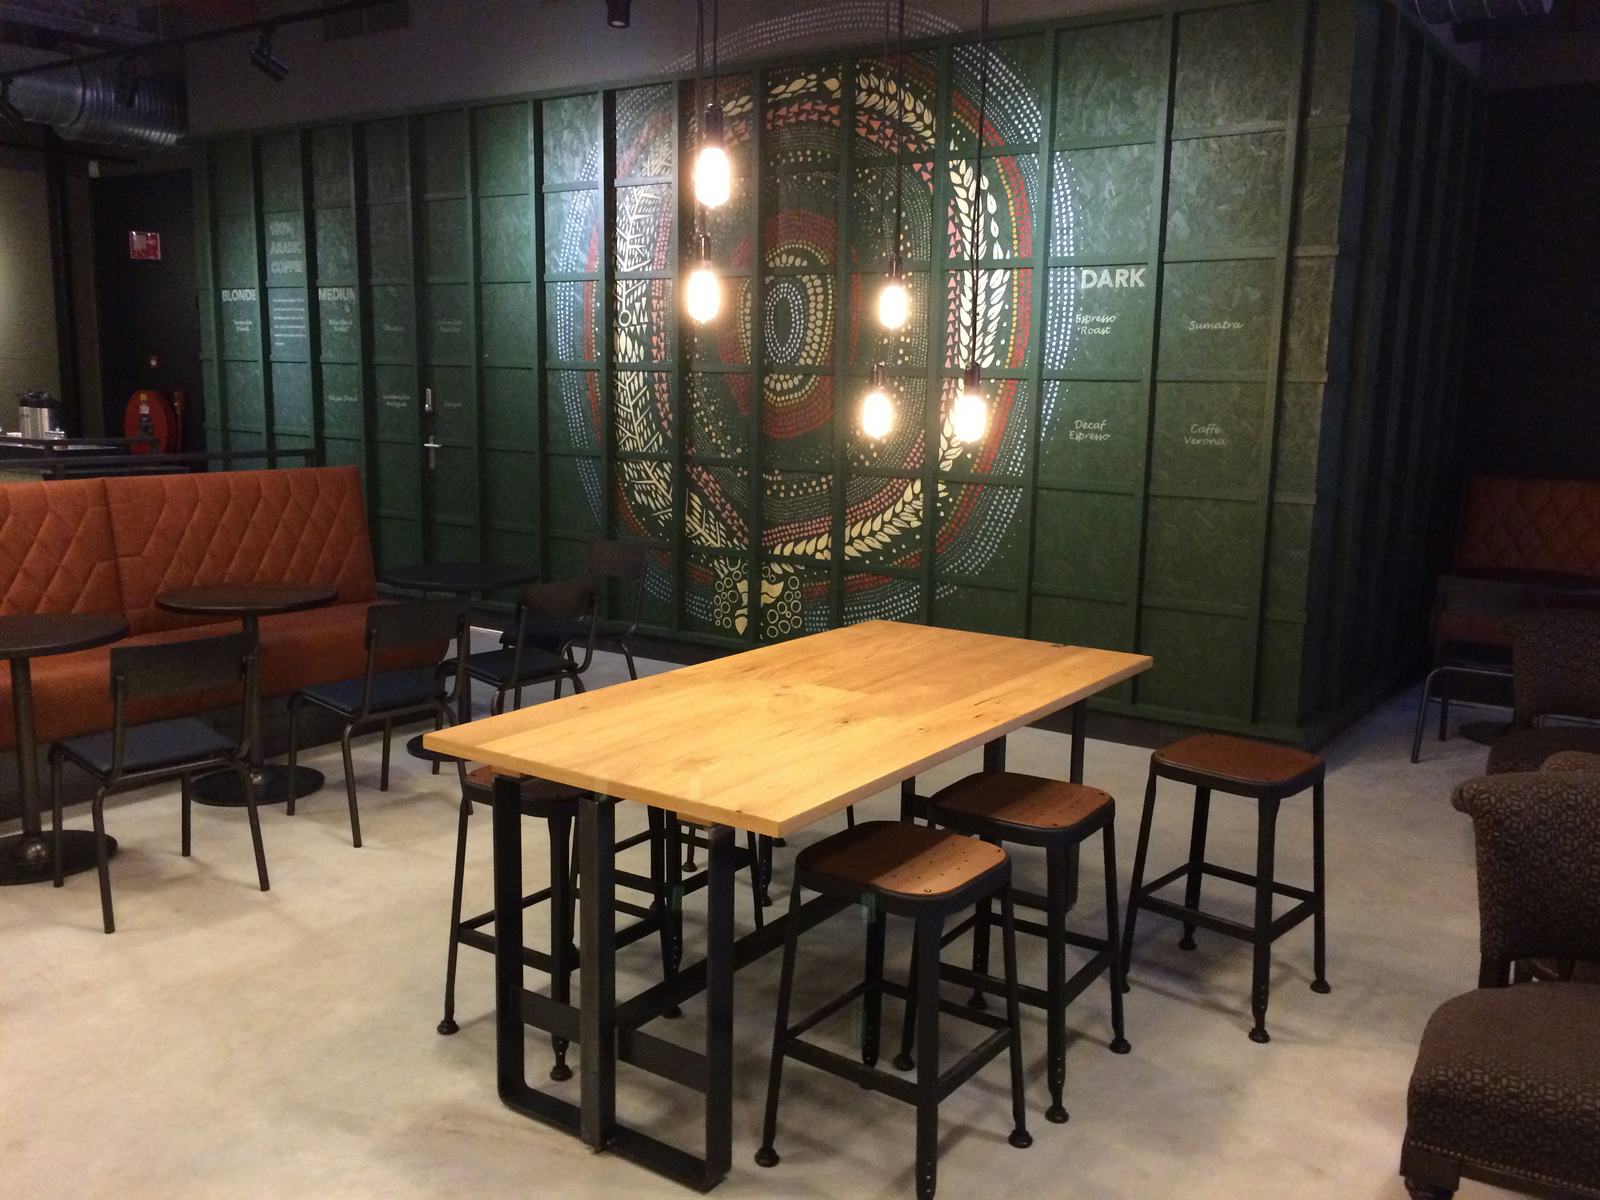 Starbucks opent eerste eigen vestiging in Den Haag